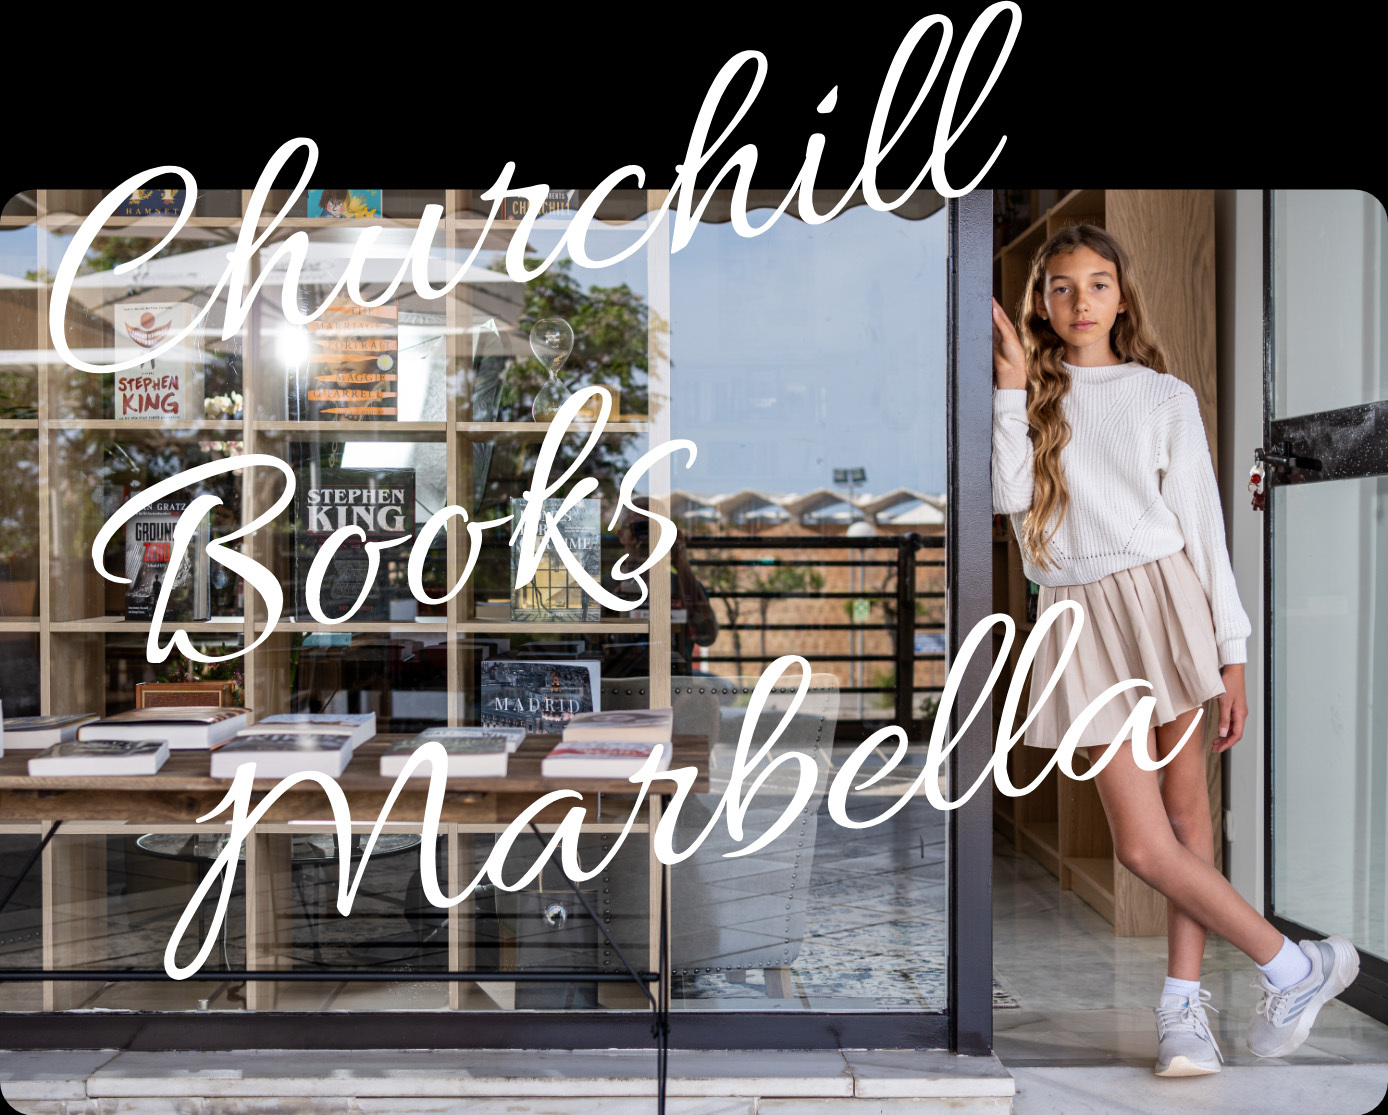 Churchill Books Marbella store